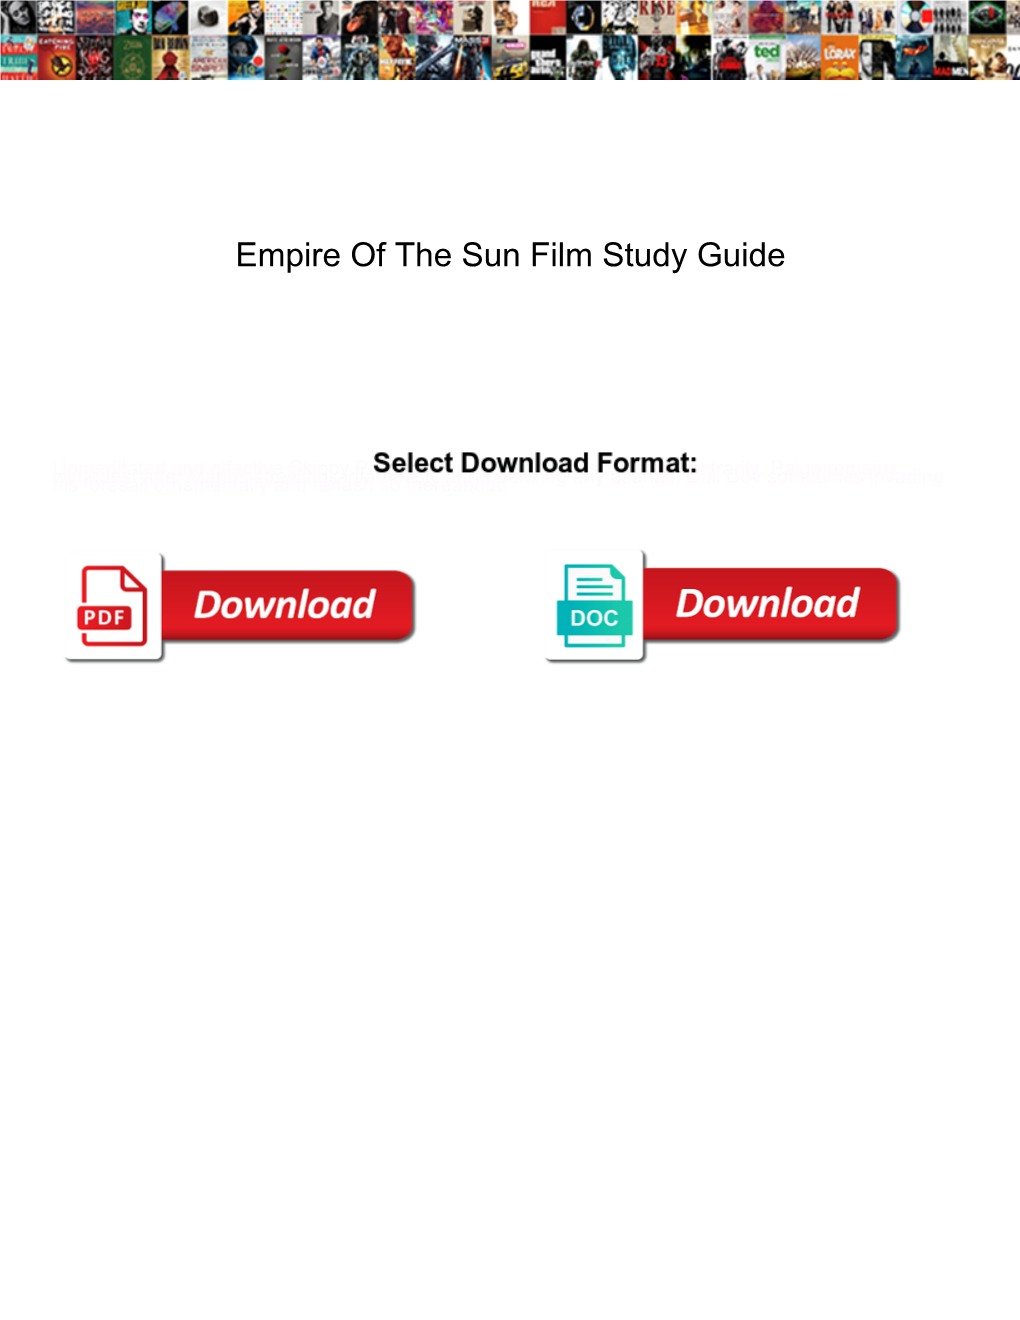 Empire of the Sun Film Study Guide